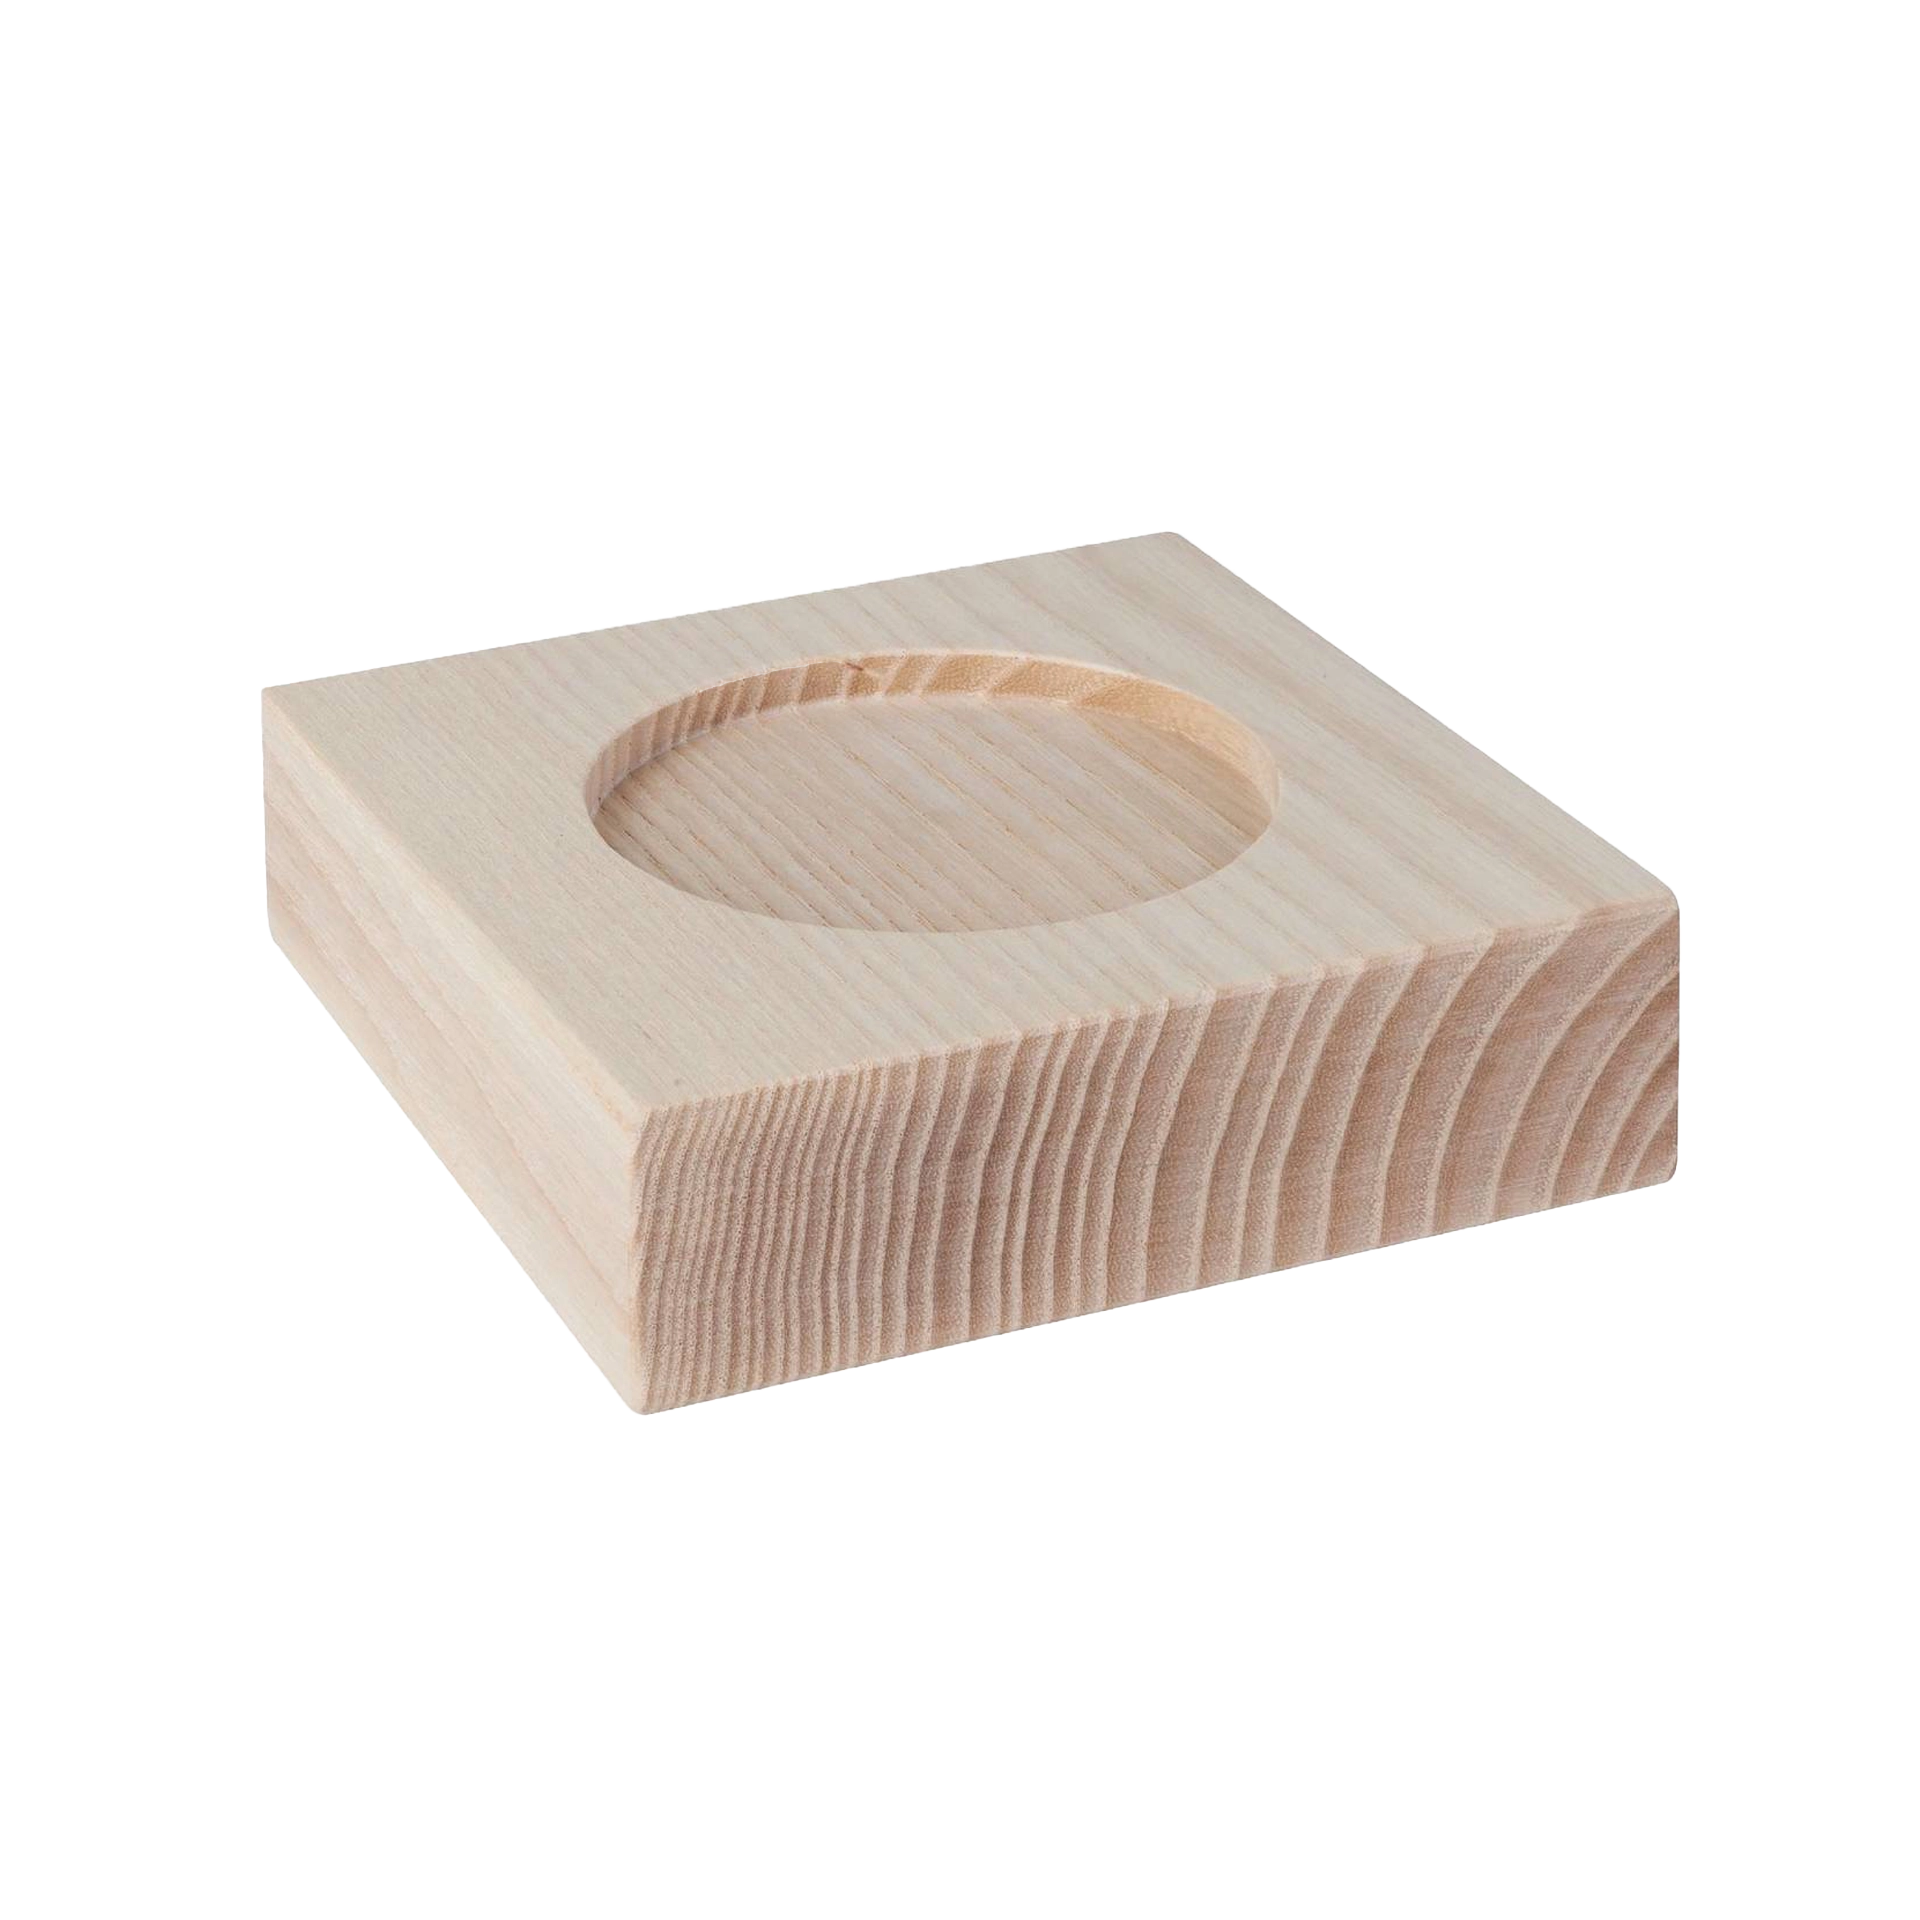 Untersatz | My Senso Premium 240ml Holz | Esche 11x11x3,2 cm 